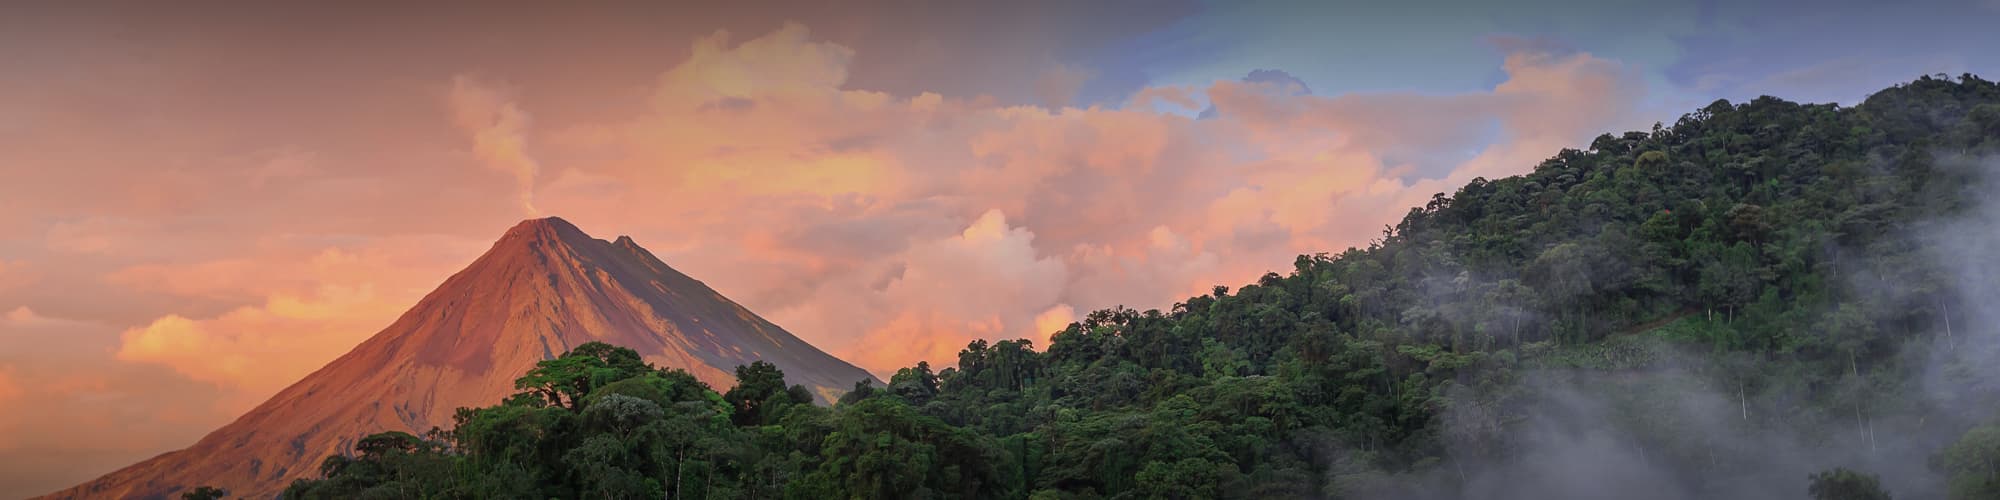 Autotour Nord-ouest et les volcans © photodiscoveries / Adobe Stock